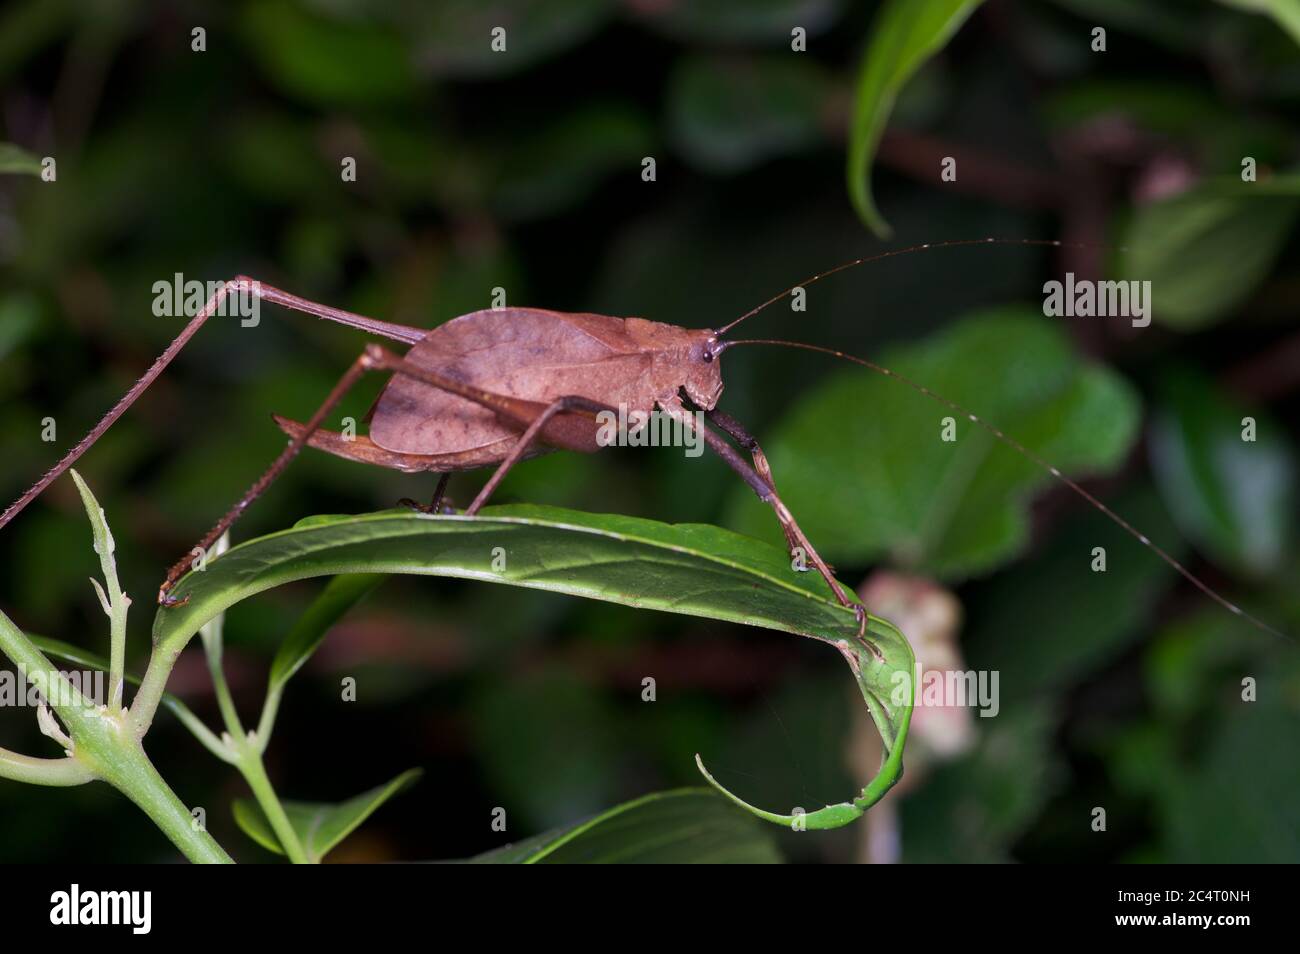 Un katydid à longues pattes (famille des Tettigonidae, sous-famille des Mecopodinae) sur une feuille la nuit dans la réserve forestière de Knuckles, district de Matale, Sri Lanka Banque D'Images